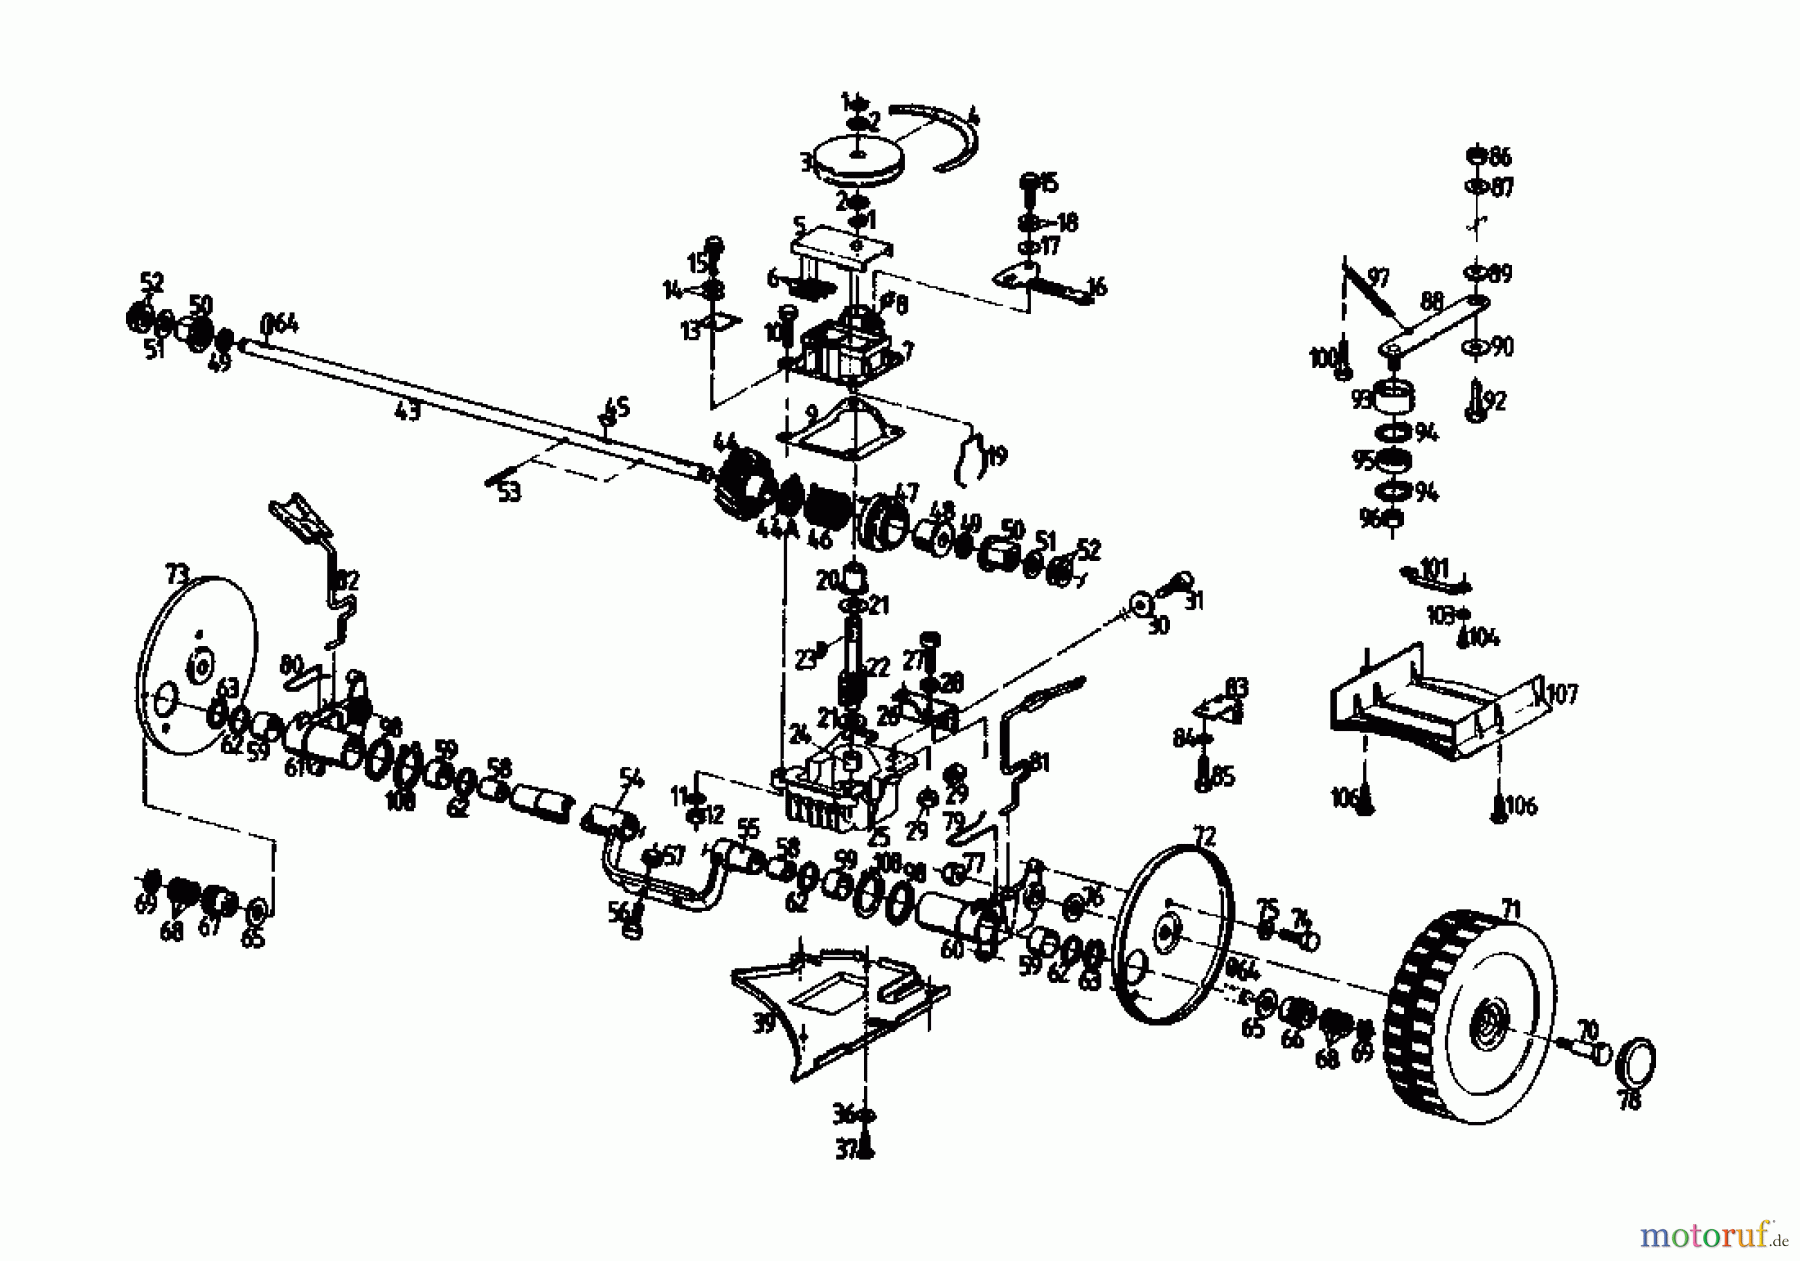  Gutbrod Motormäher mit Antrieb HB 47 R-2 T 02847.05  (1989) Getriebe